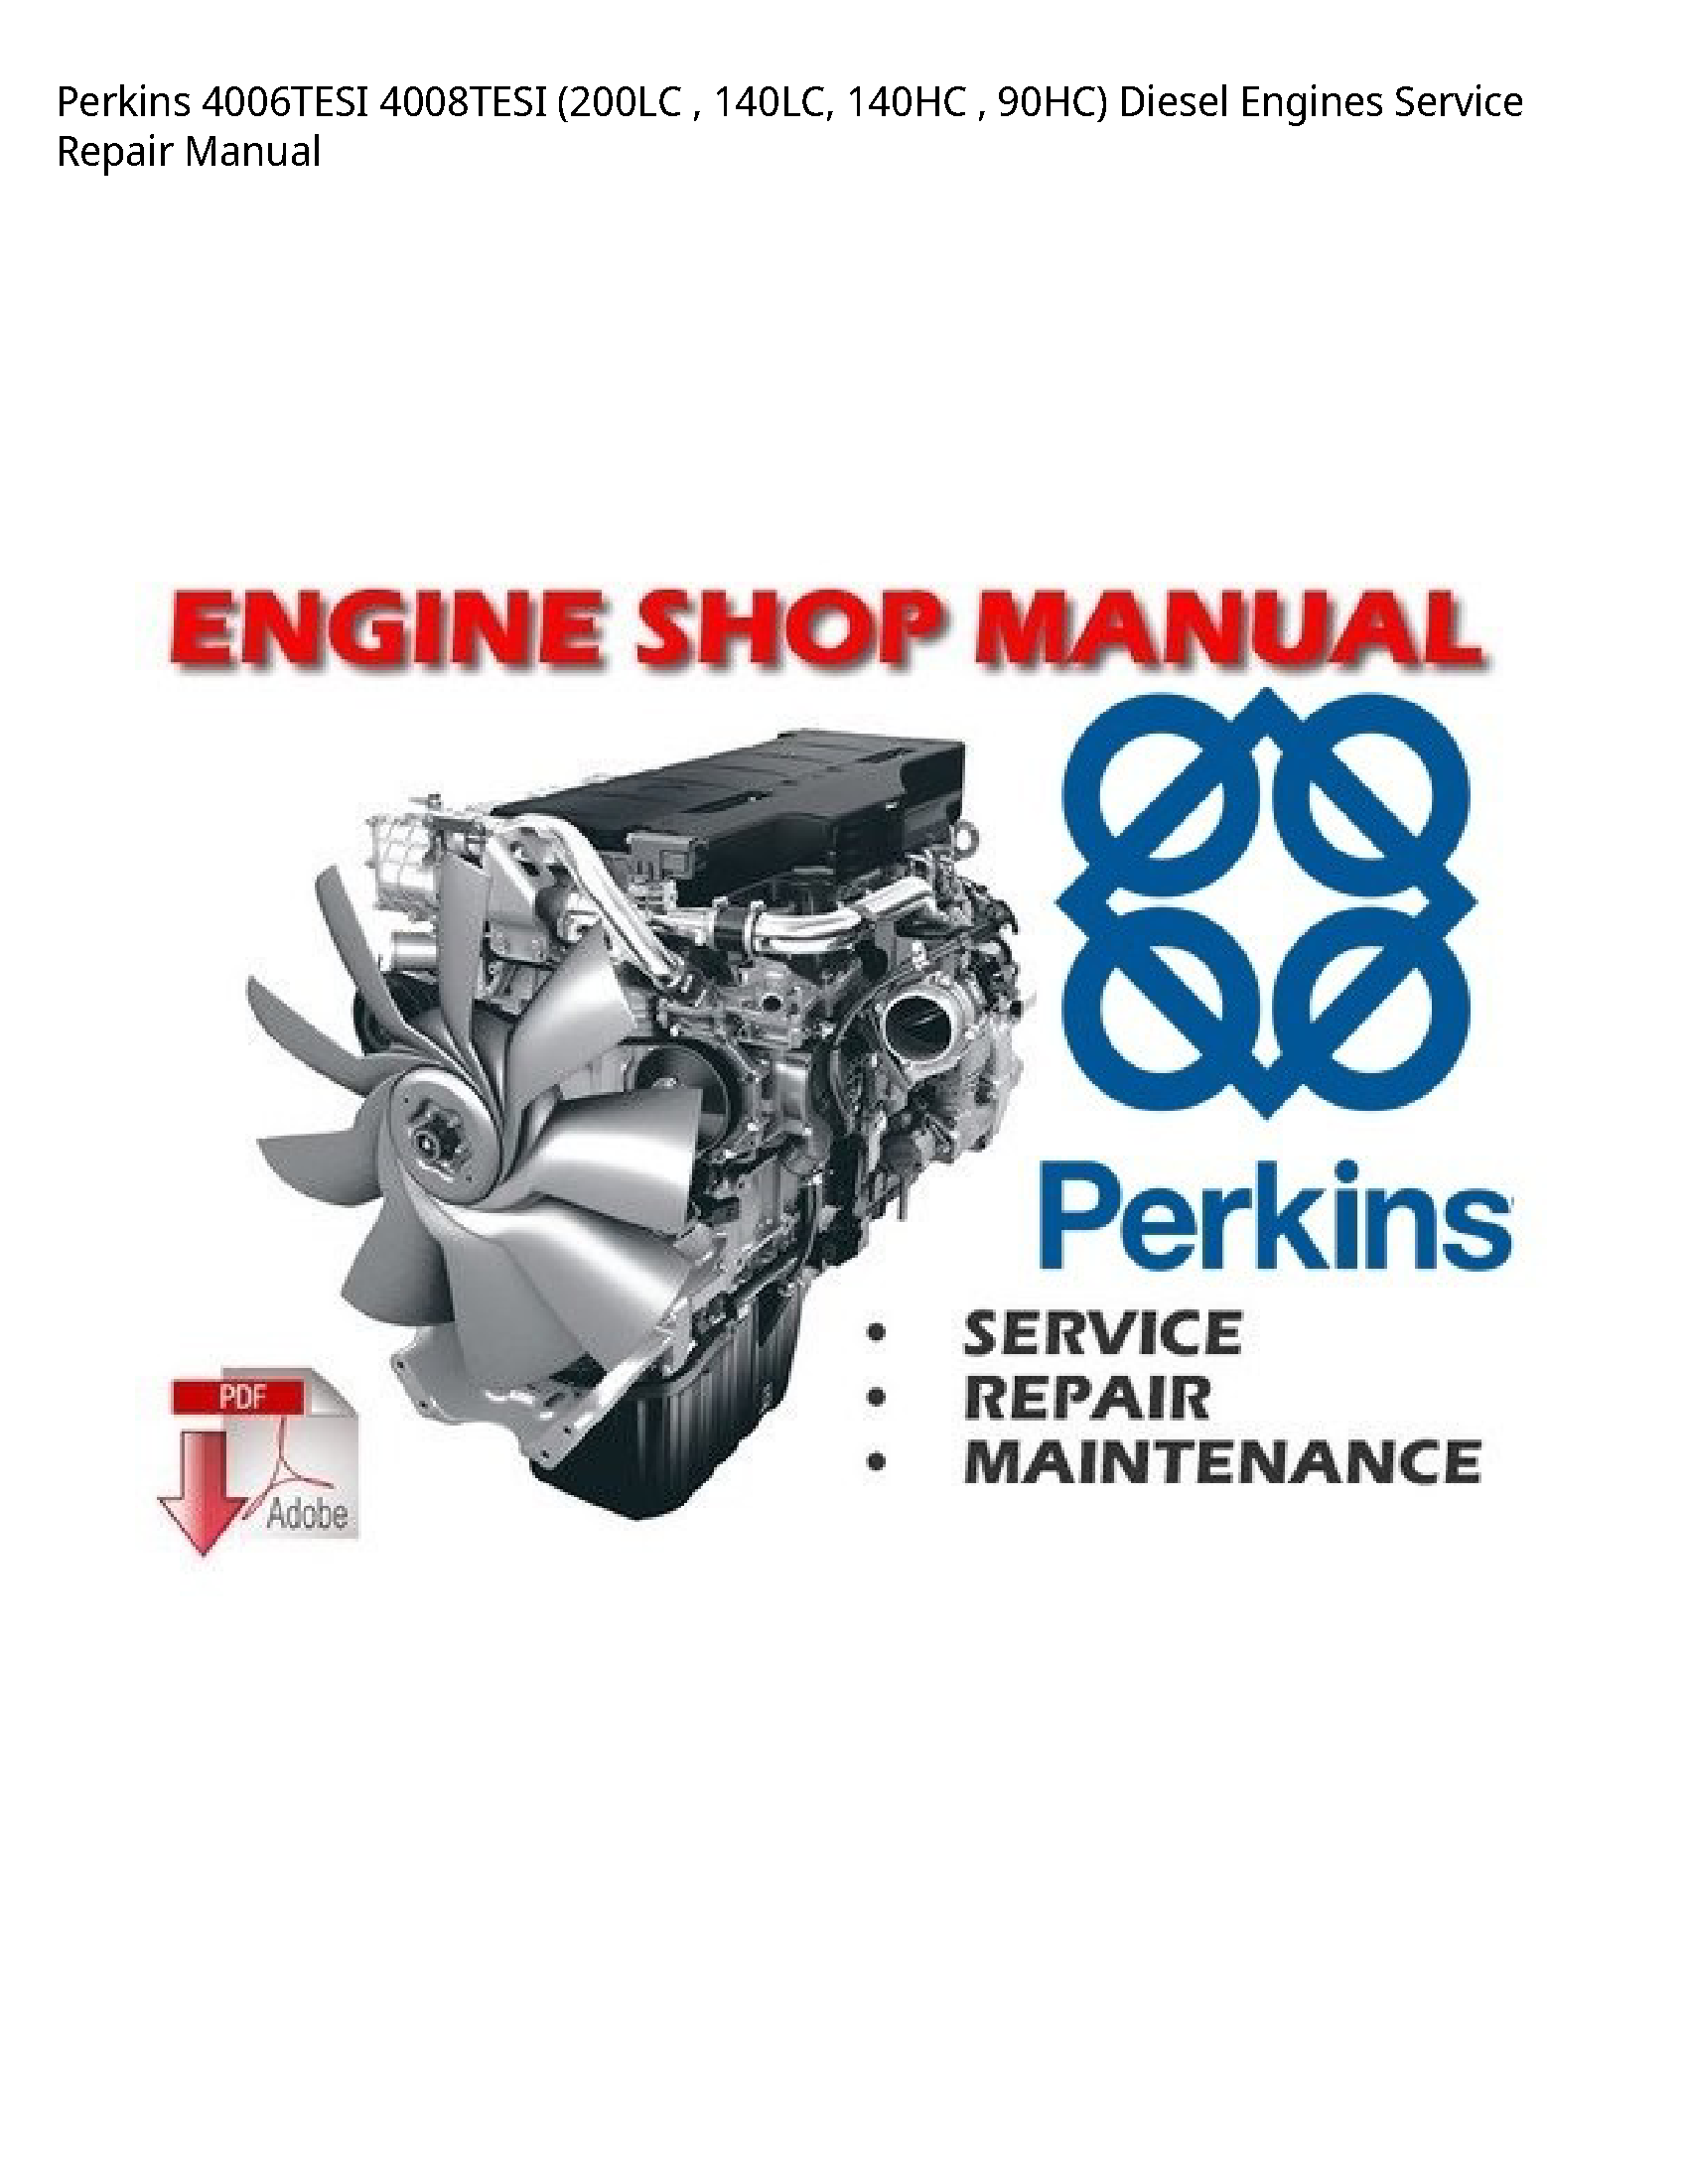 Perkins 4006TESI Diesel Engines manual